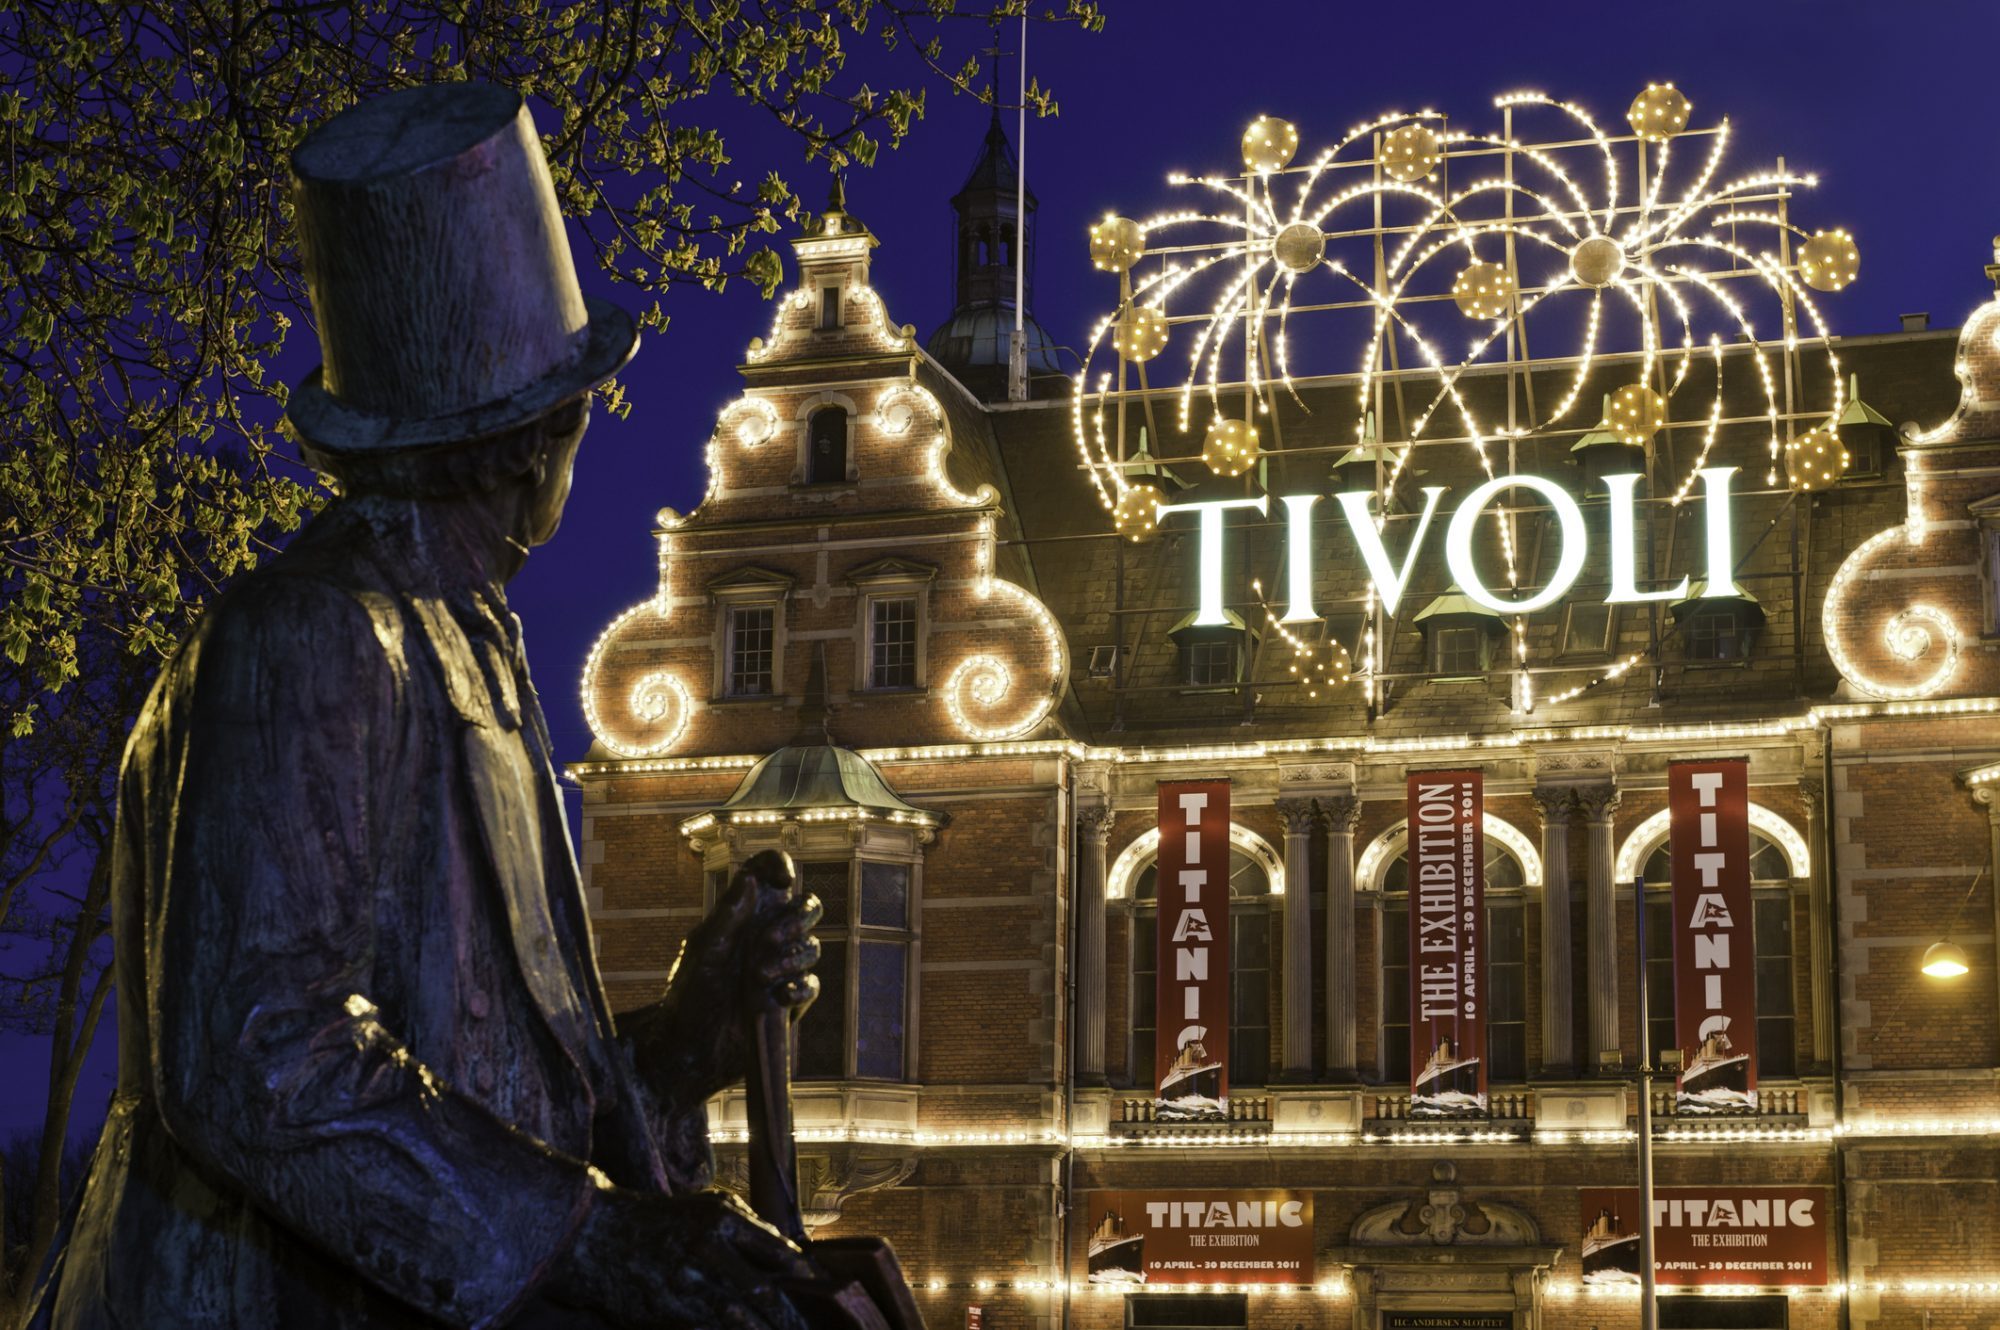 Copenhagen's Tivoli Gardens opens in February for first time